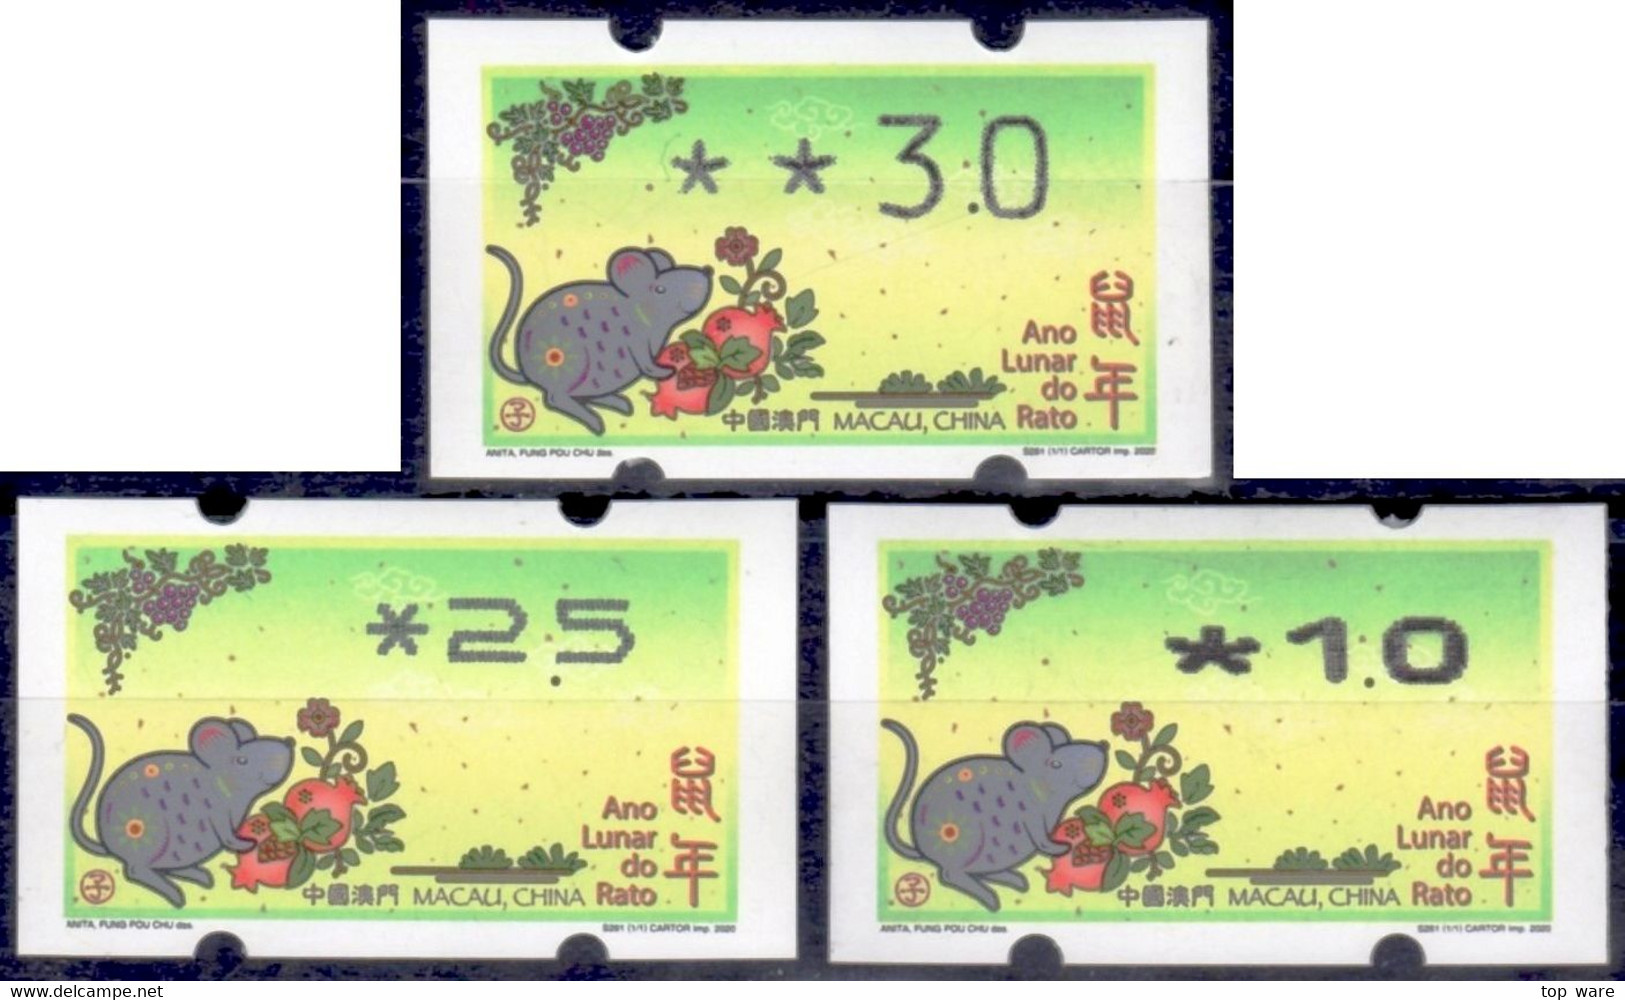 2020 Chine Macao Macau ATM Stamps Année Du Souris / Tous Types D'imprimantes Klussendorf Nagler Automatenmarken - Distributeurs